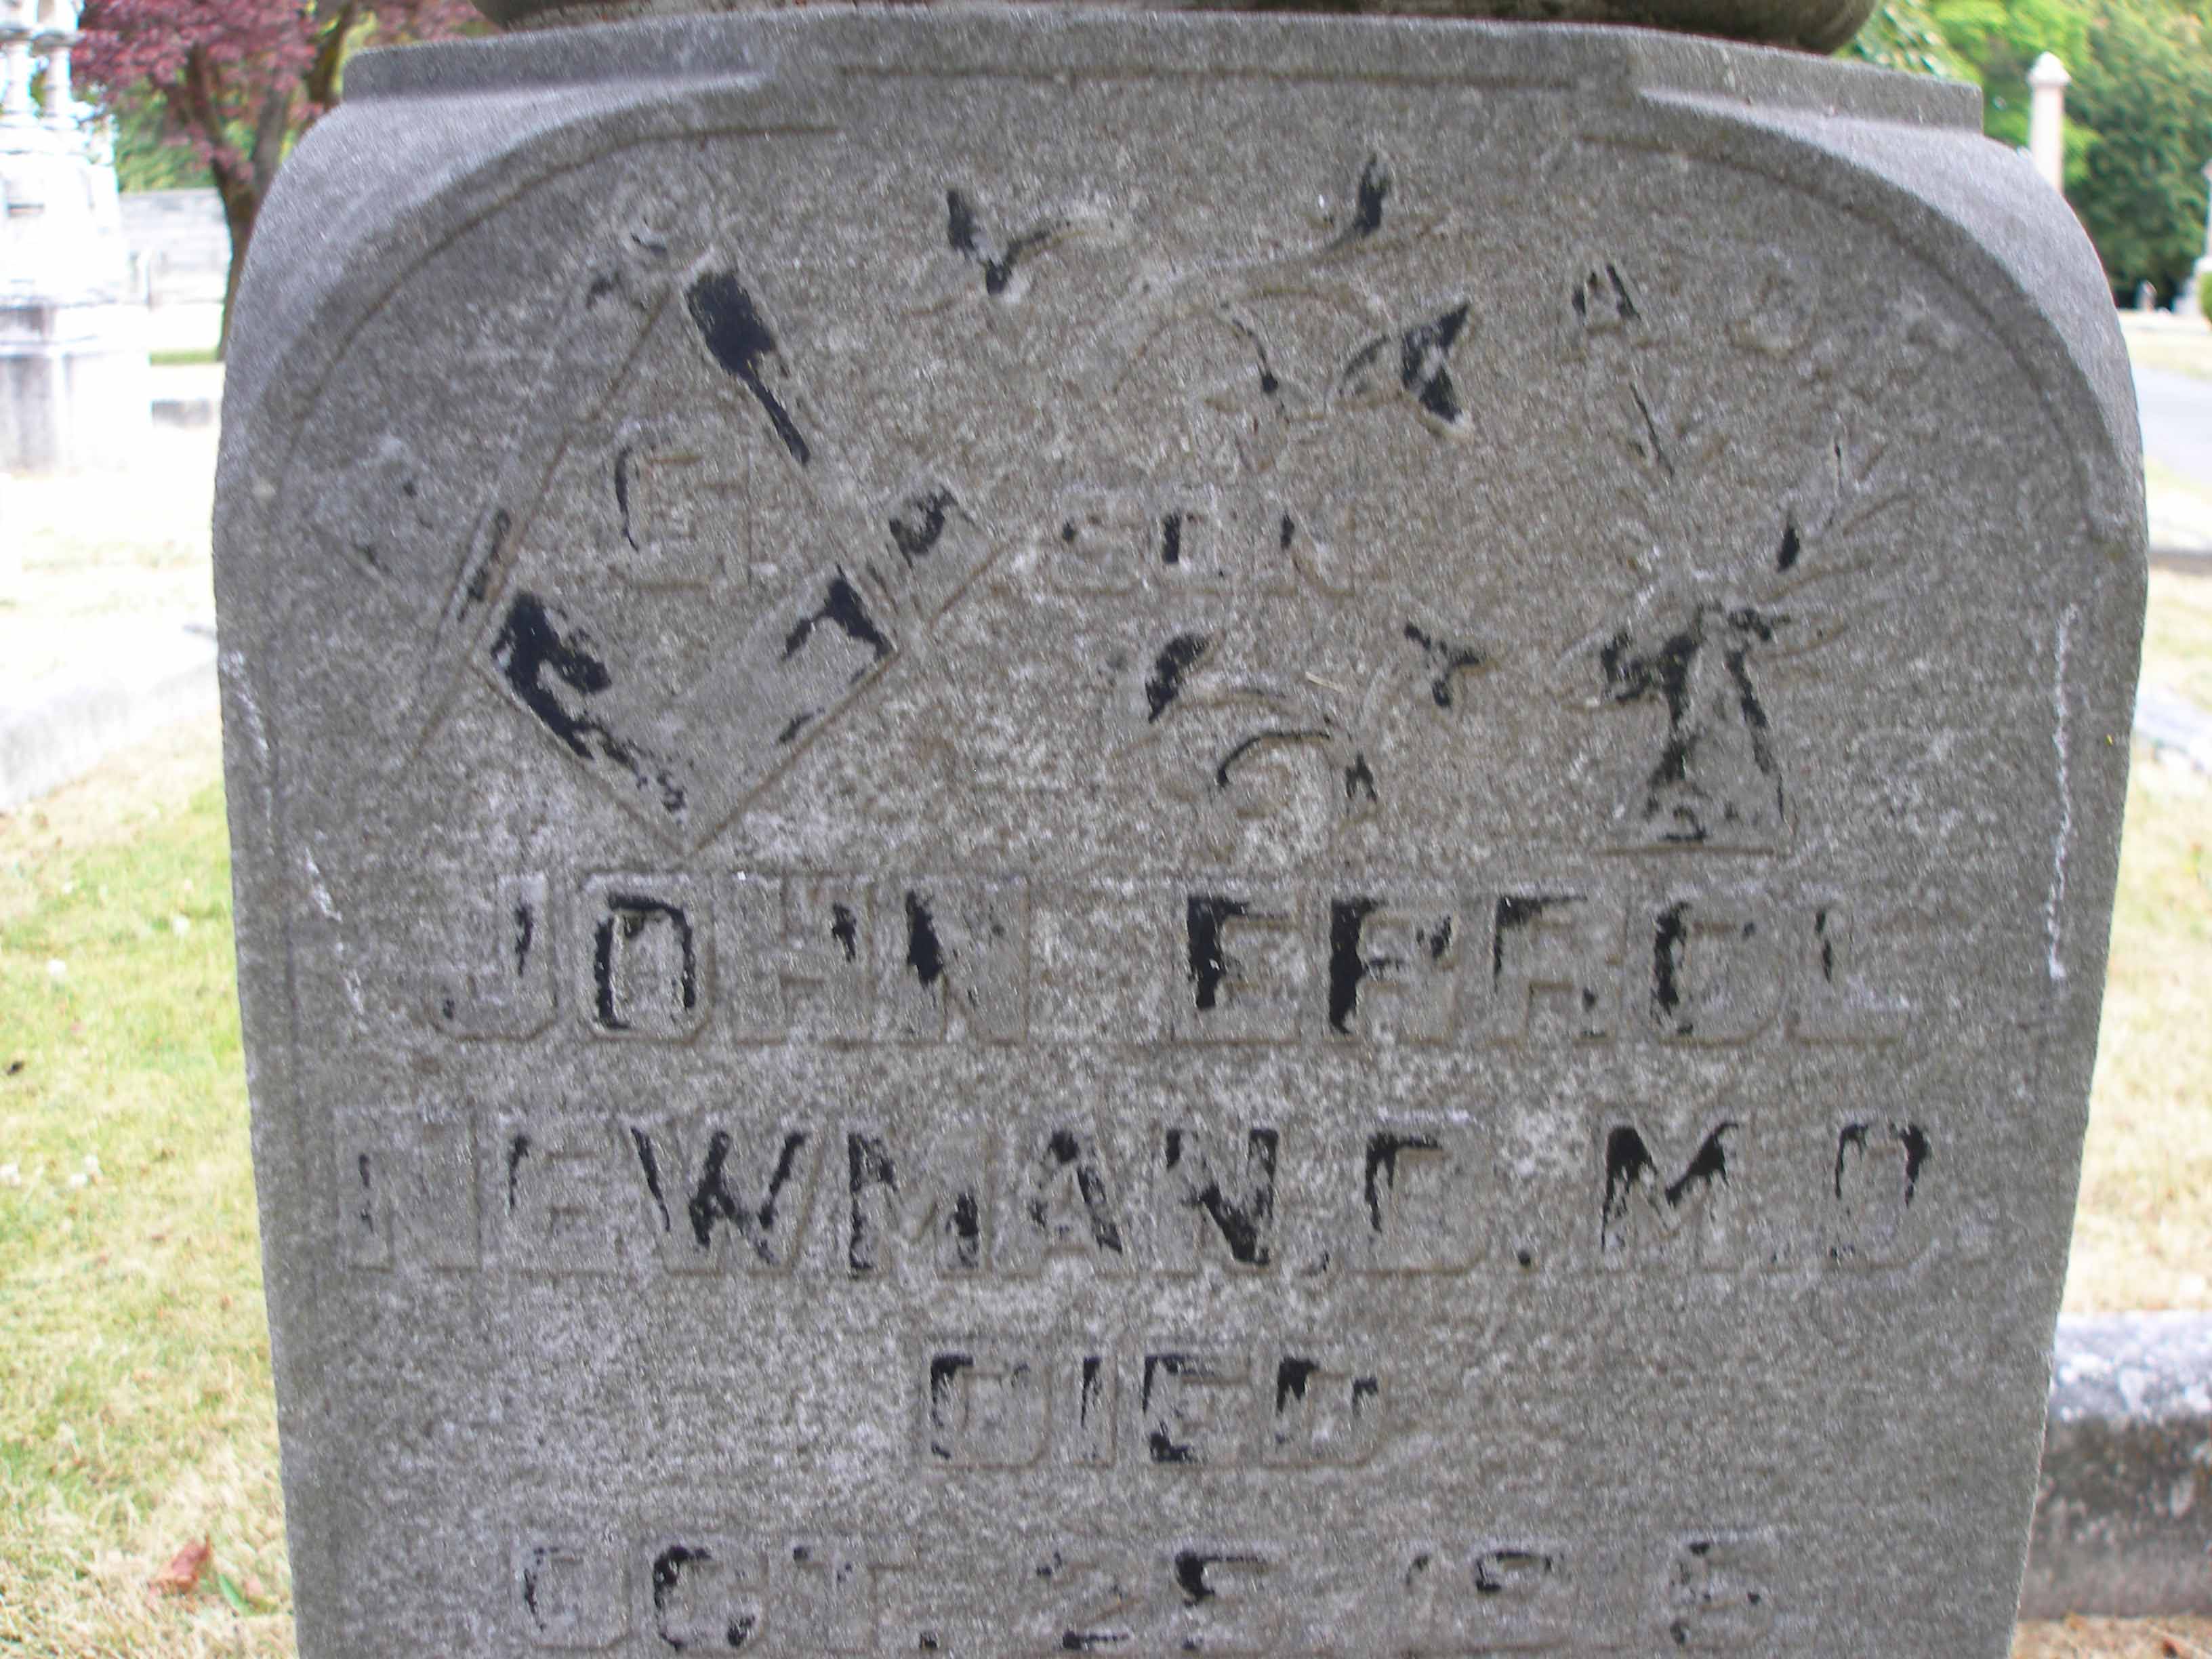 Dr. John Errol Newman tomb inscription